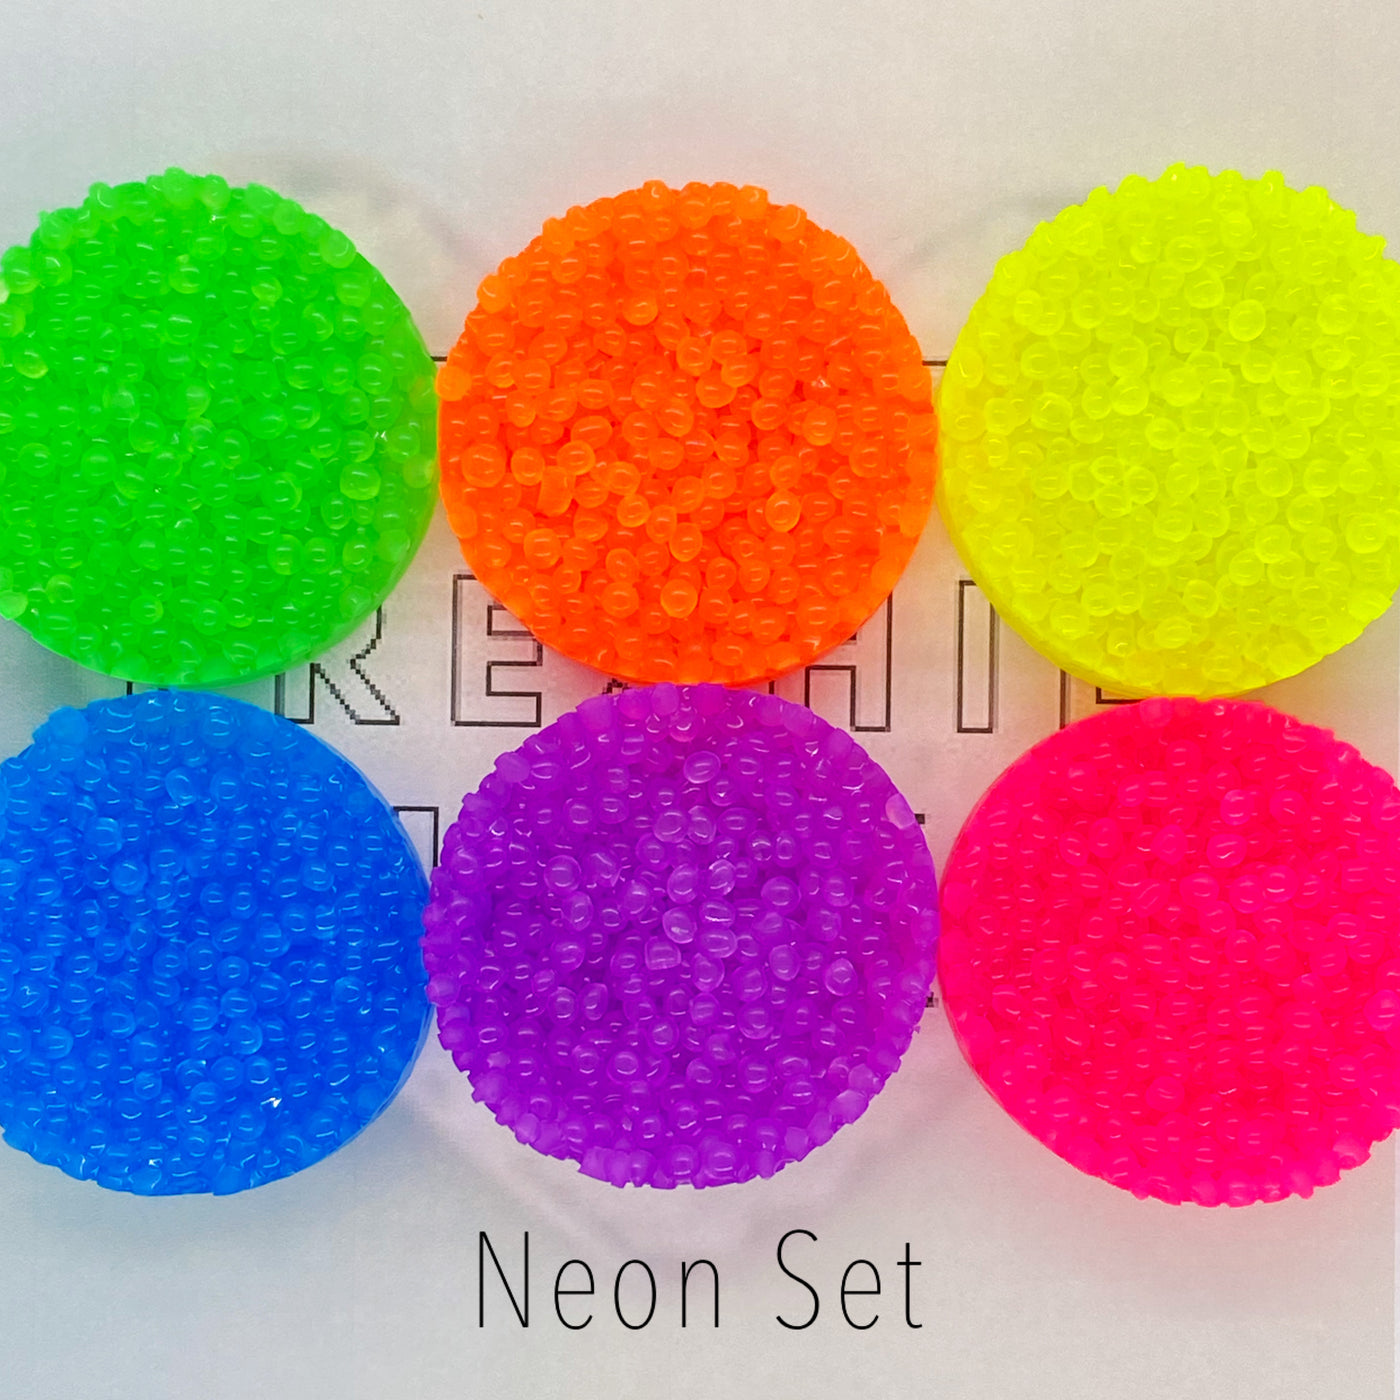 Neon Mica Powder SET / FIVE Mica Powders / 10g jars each